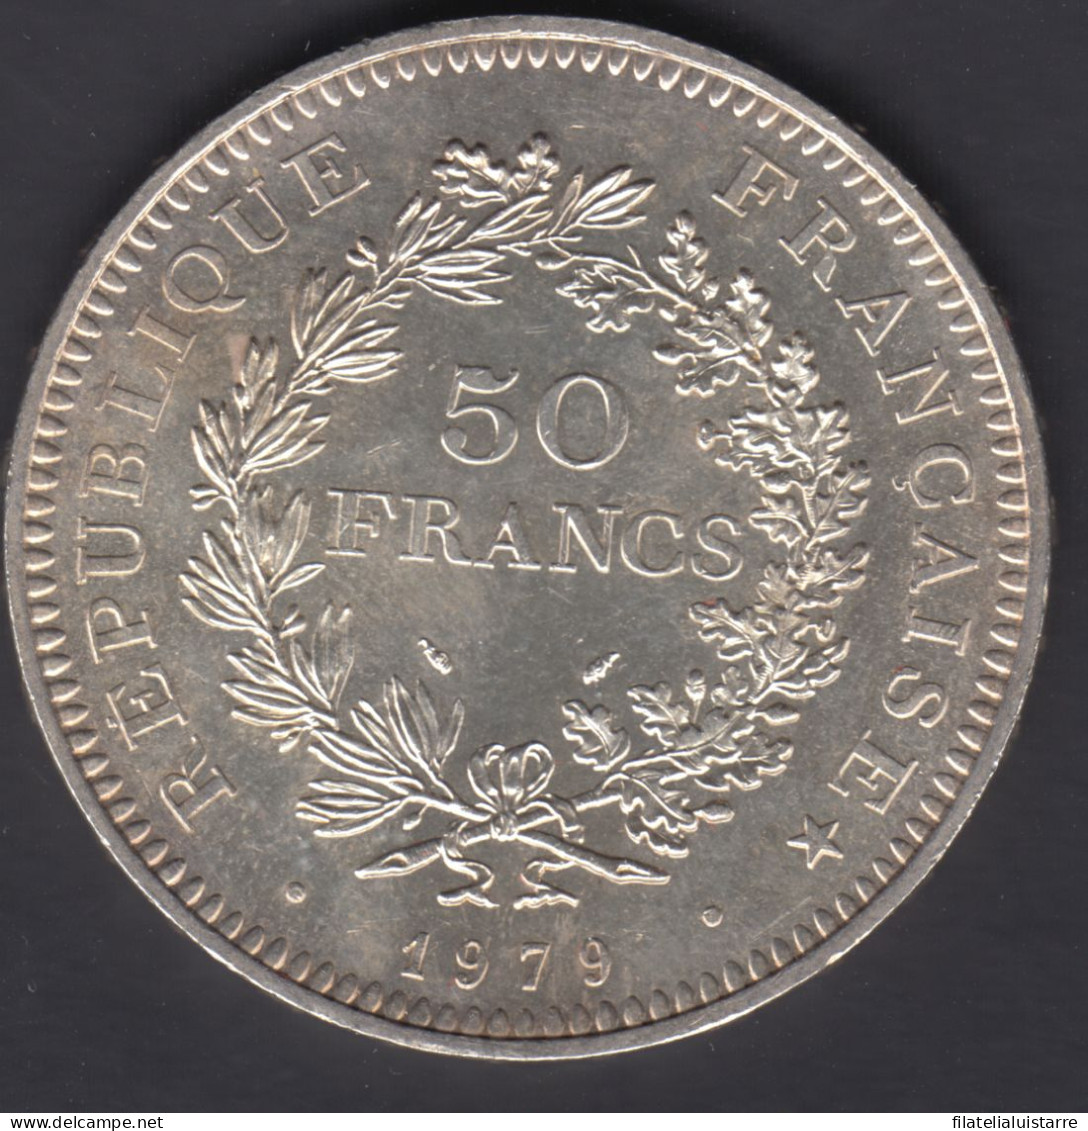 MONEDA FRANCIA - 50 FRANCOS 1979 - PLATA 30 Gr. - 50 Francs